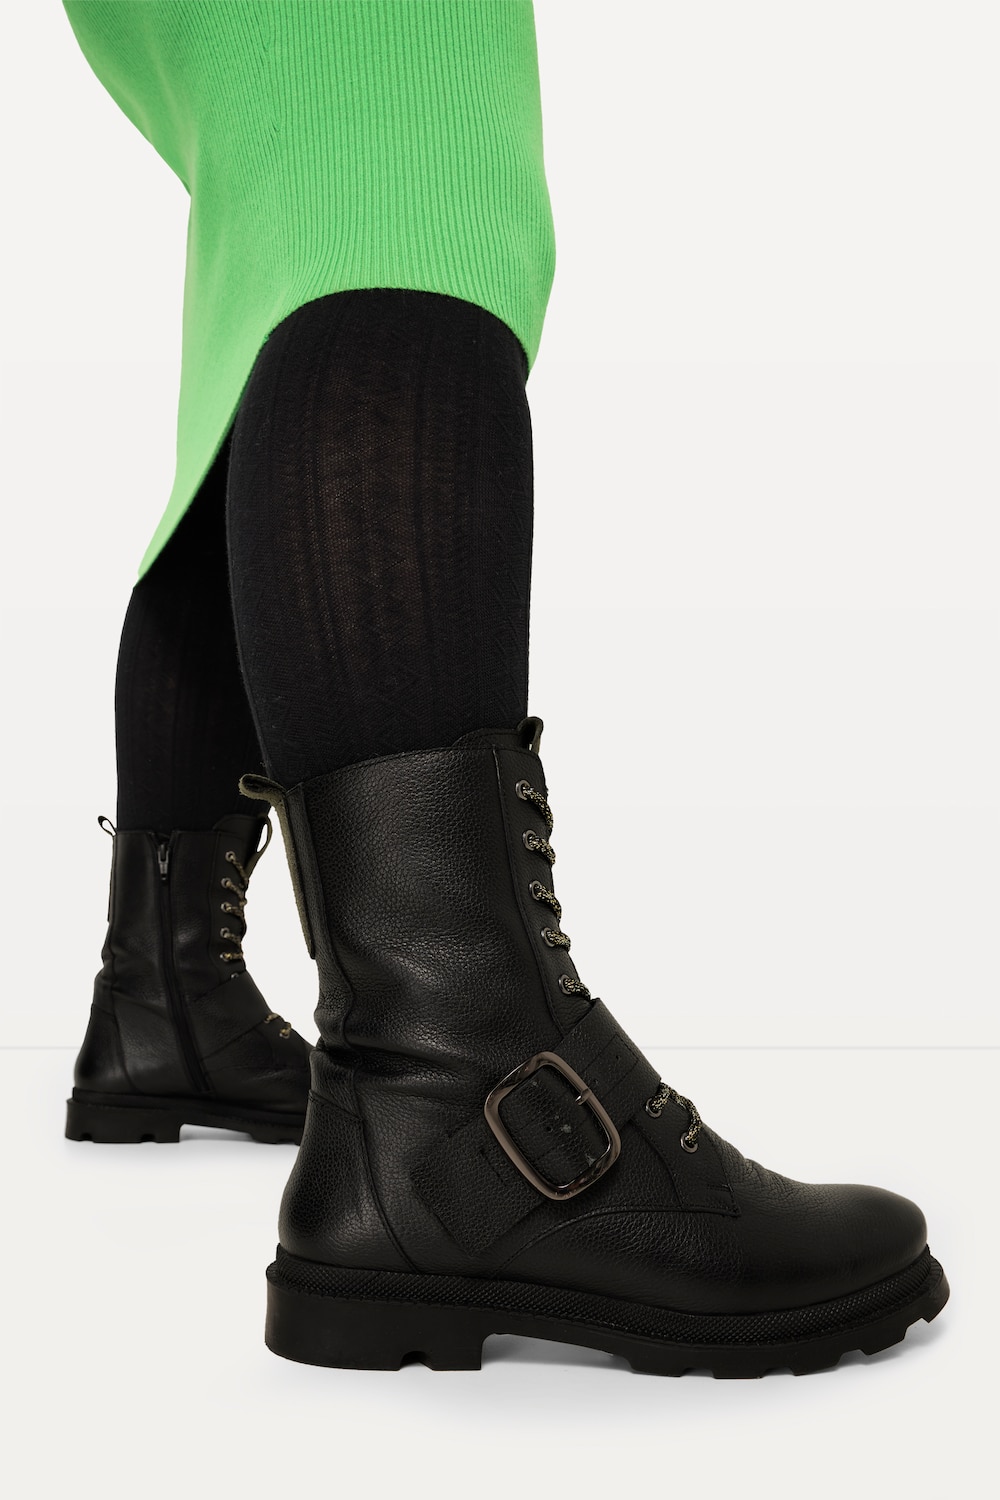 Leder-Boots, Damen, schwarz, Größe: 41, Polyester/Leder, Ulla Popken von Ulla Popken